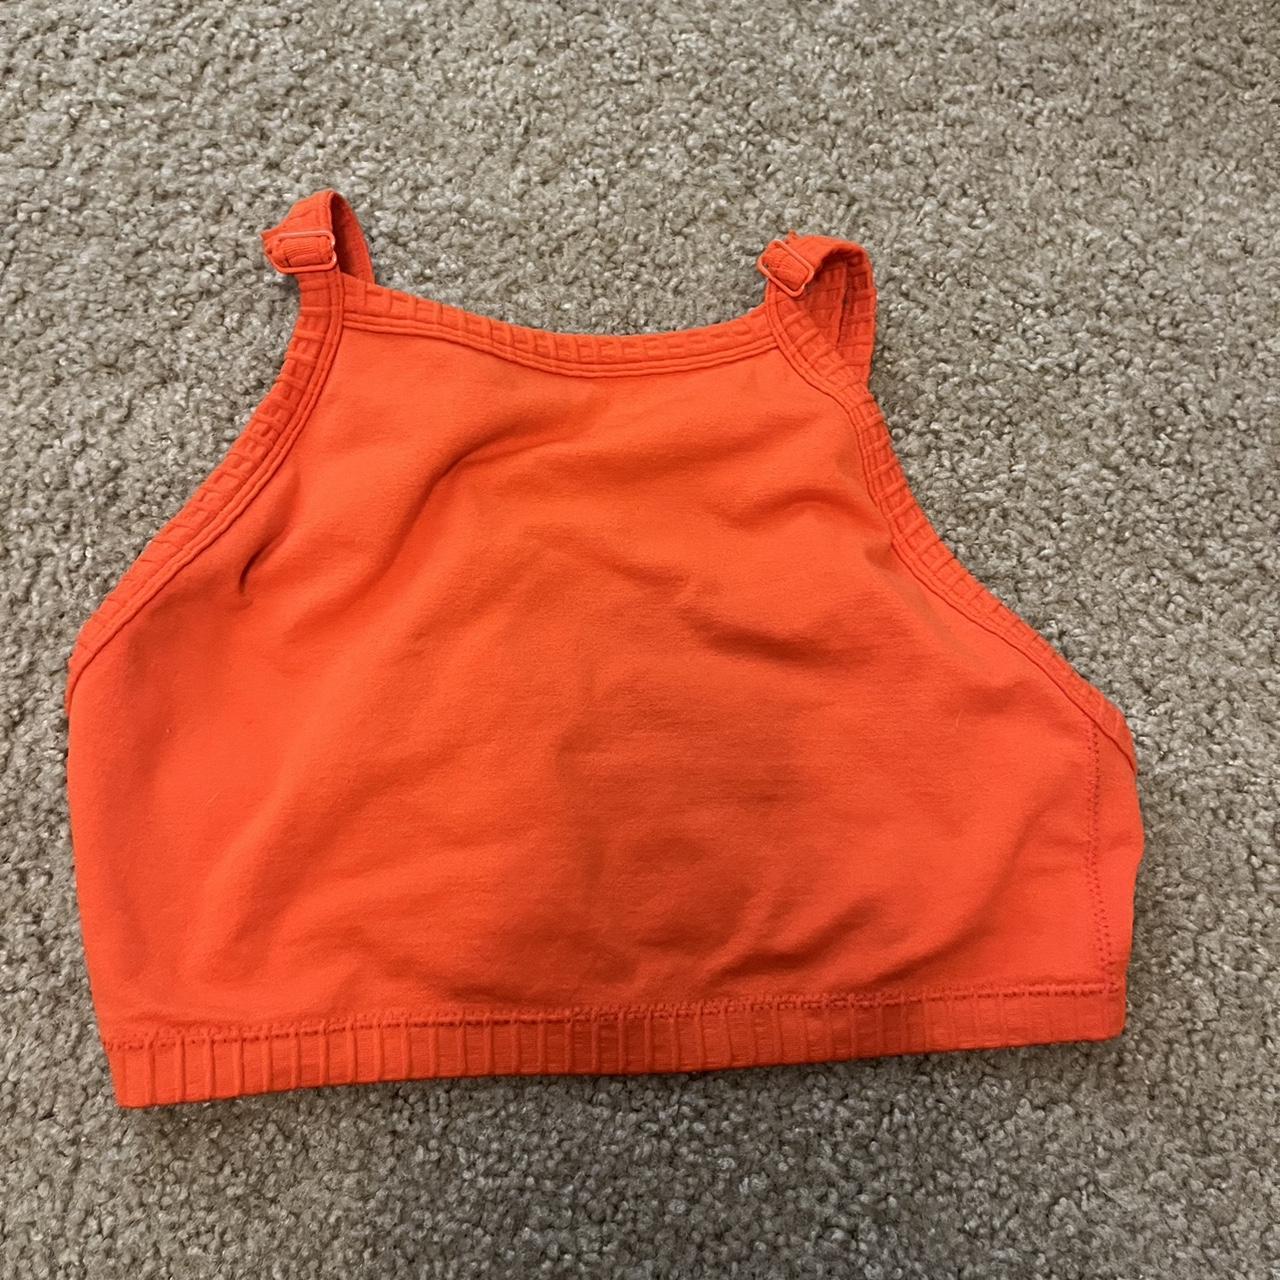 forever 21 orange women’s sports bra size... - Depop